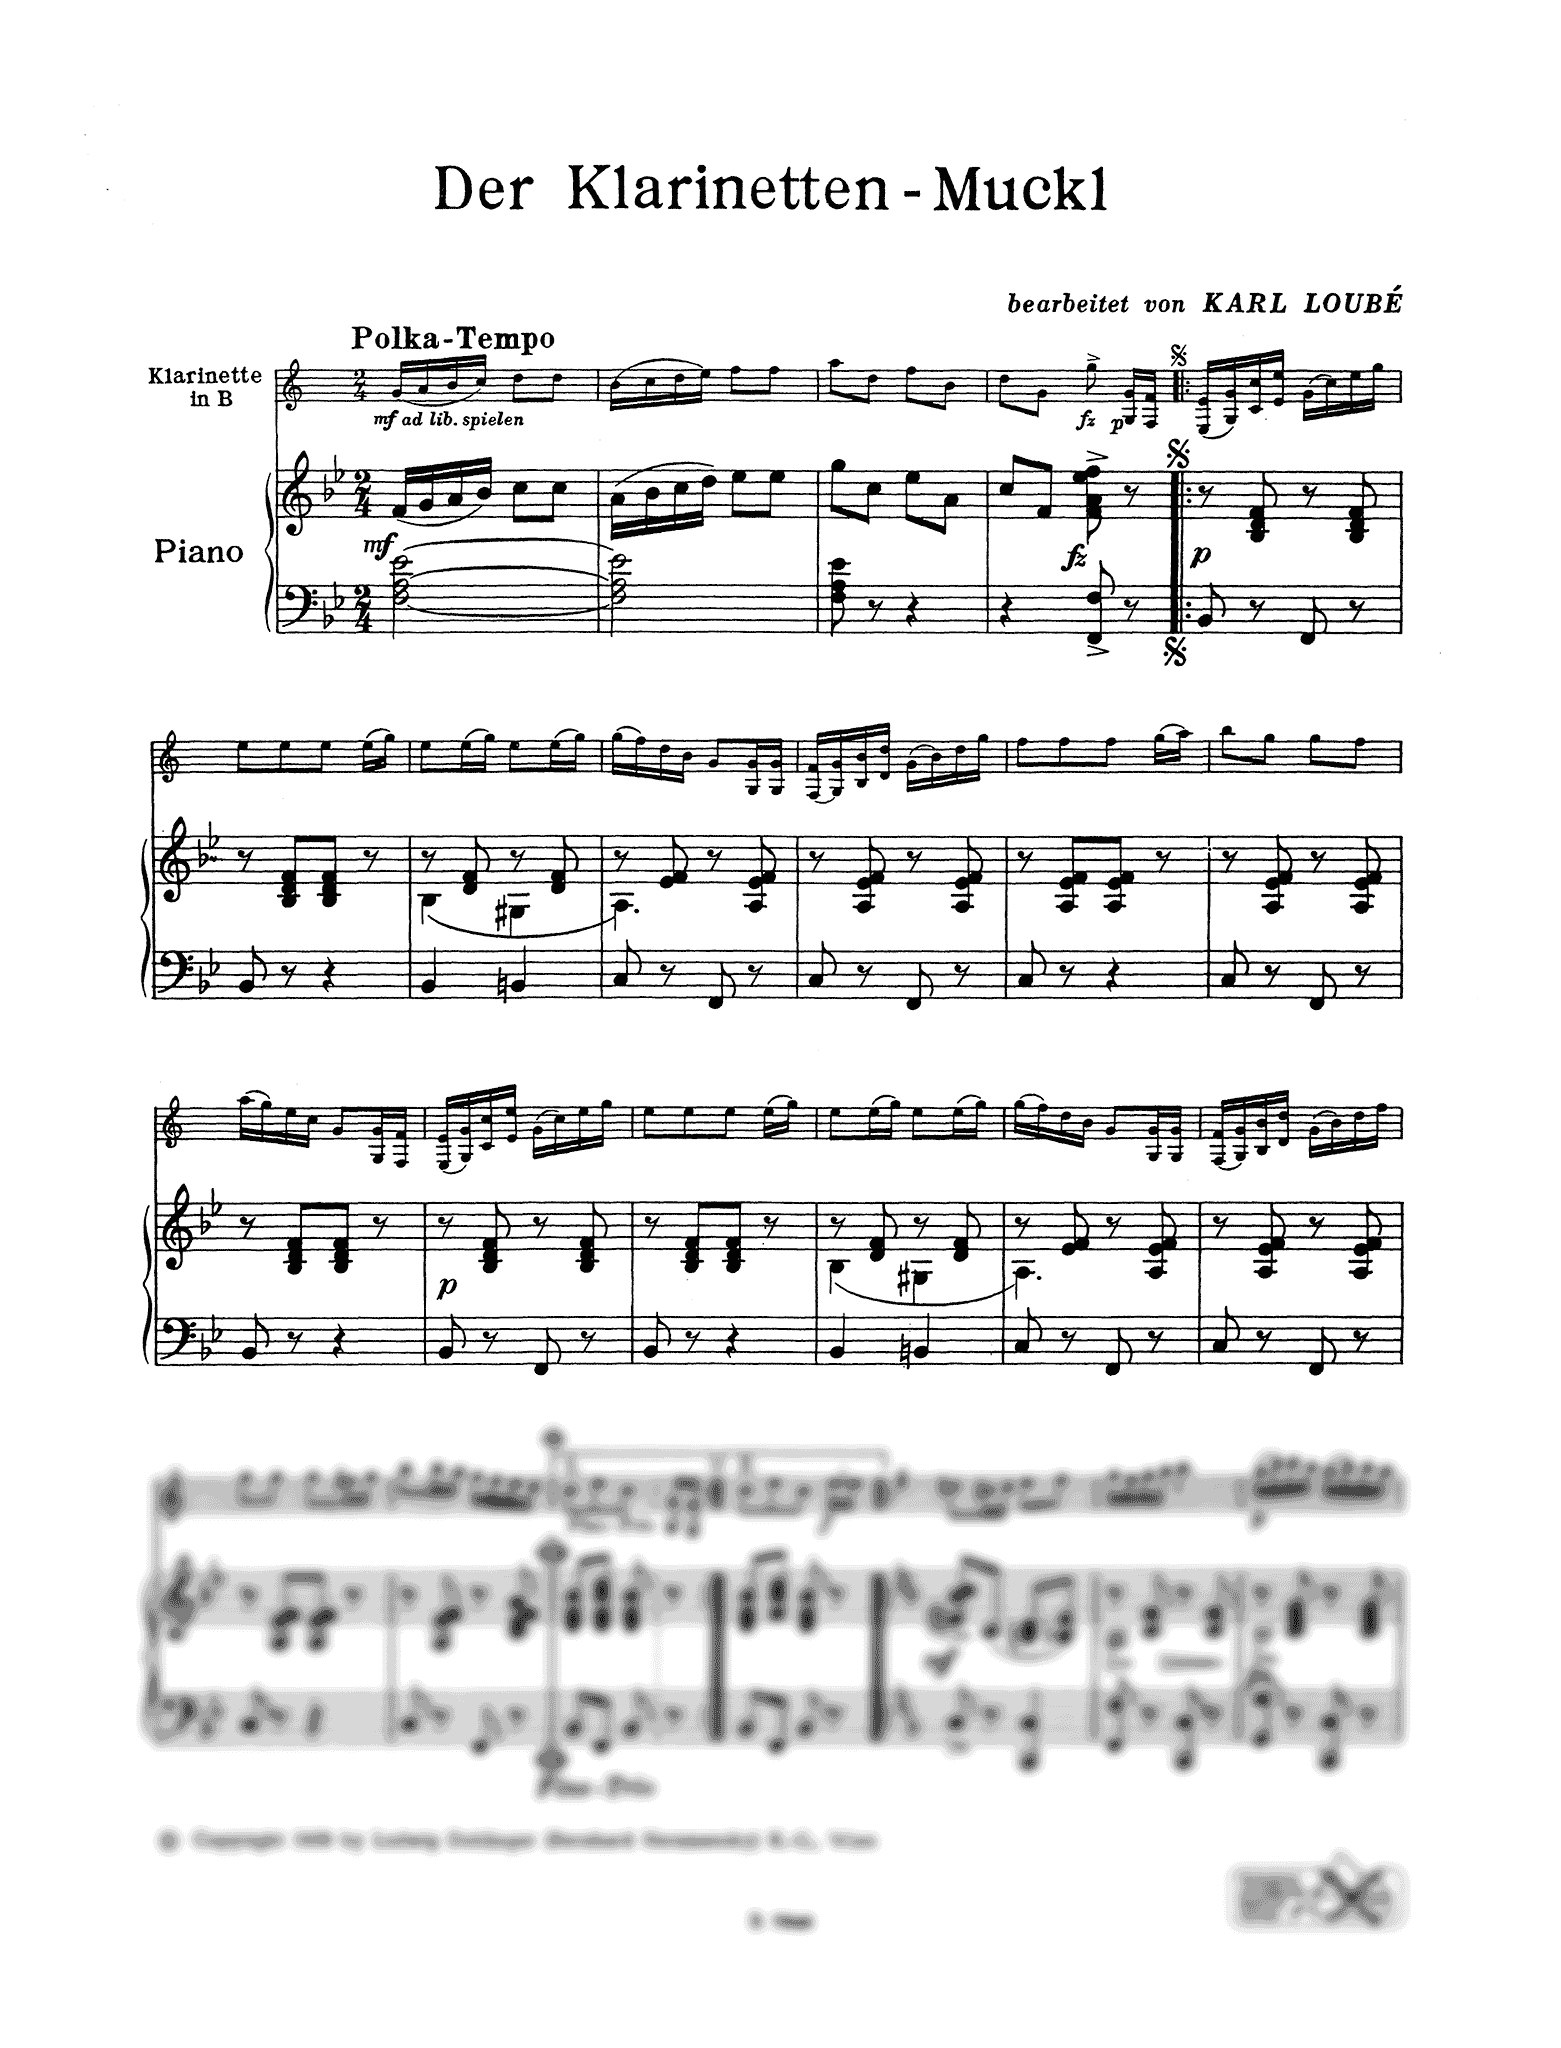 Der Klarinetten-Muckl Clarinet Polka score